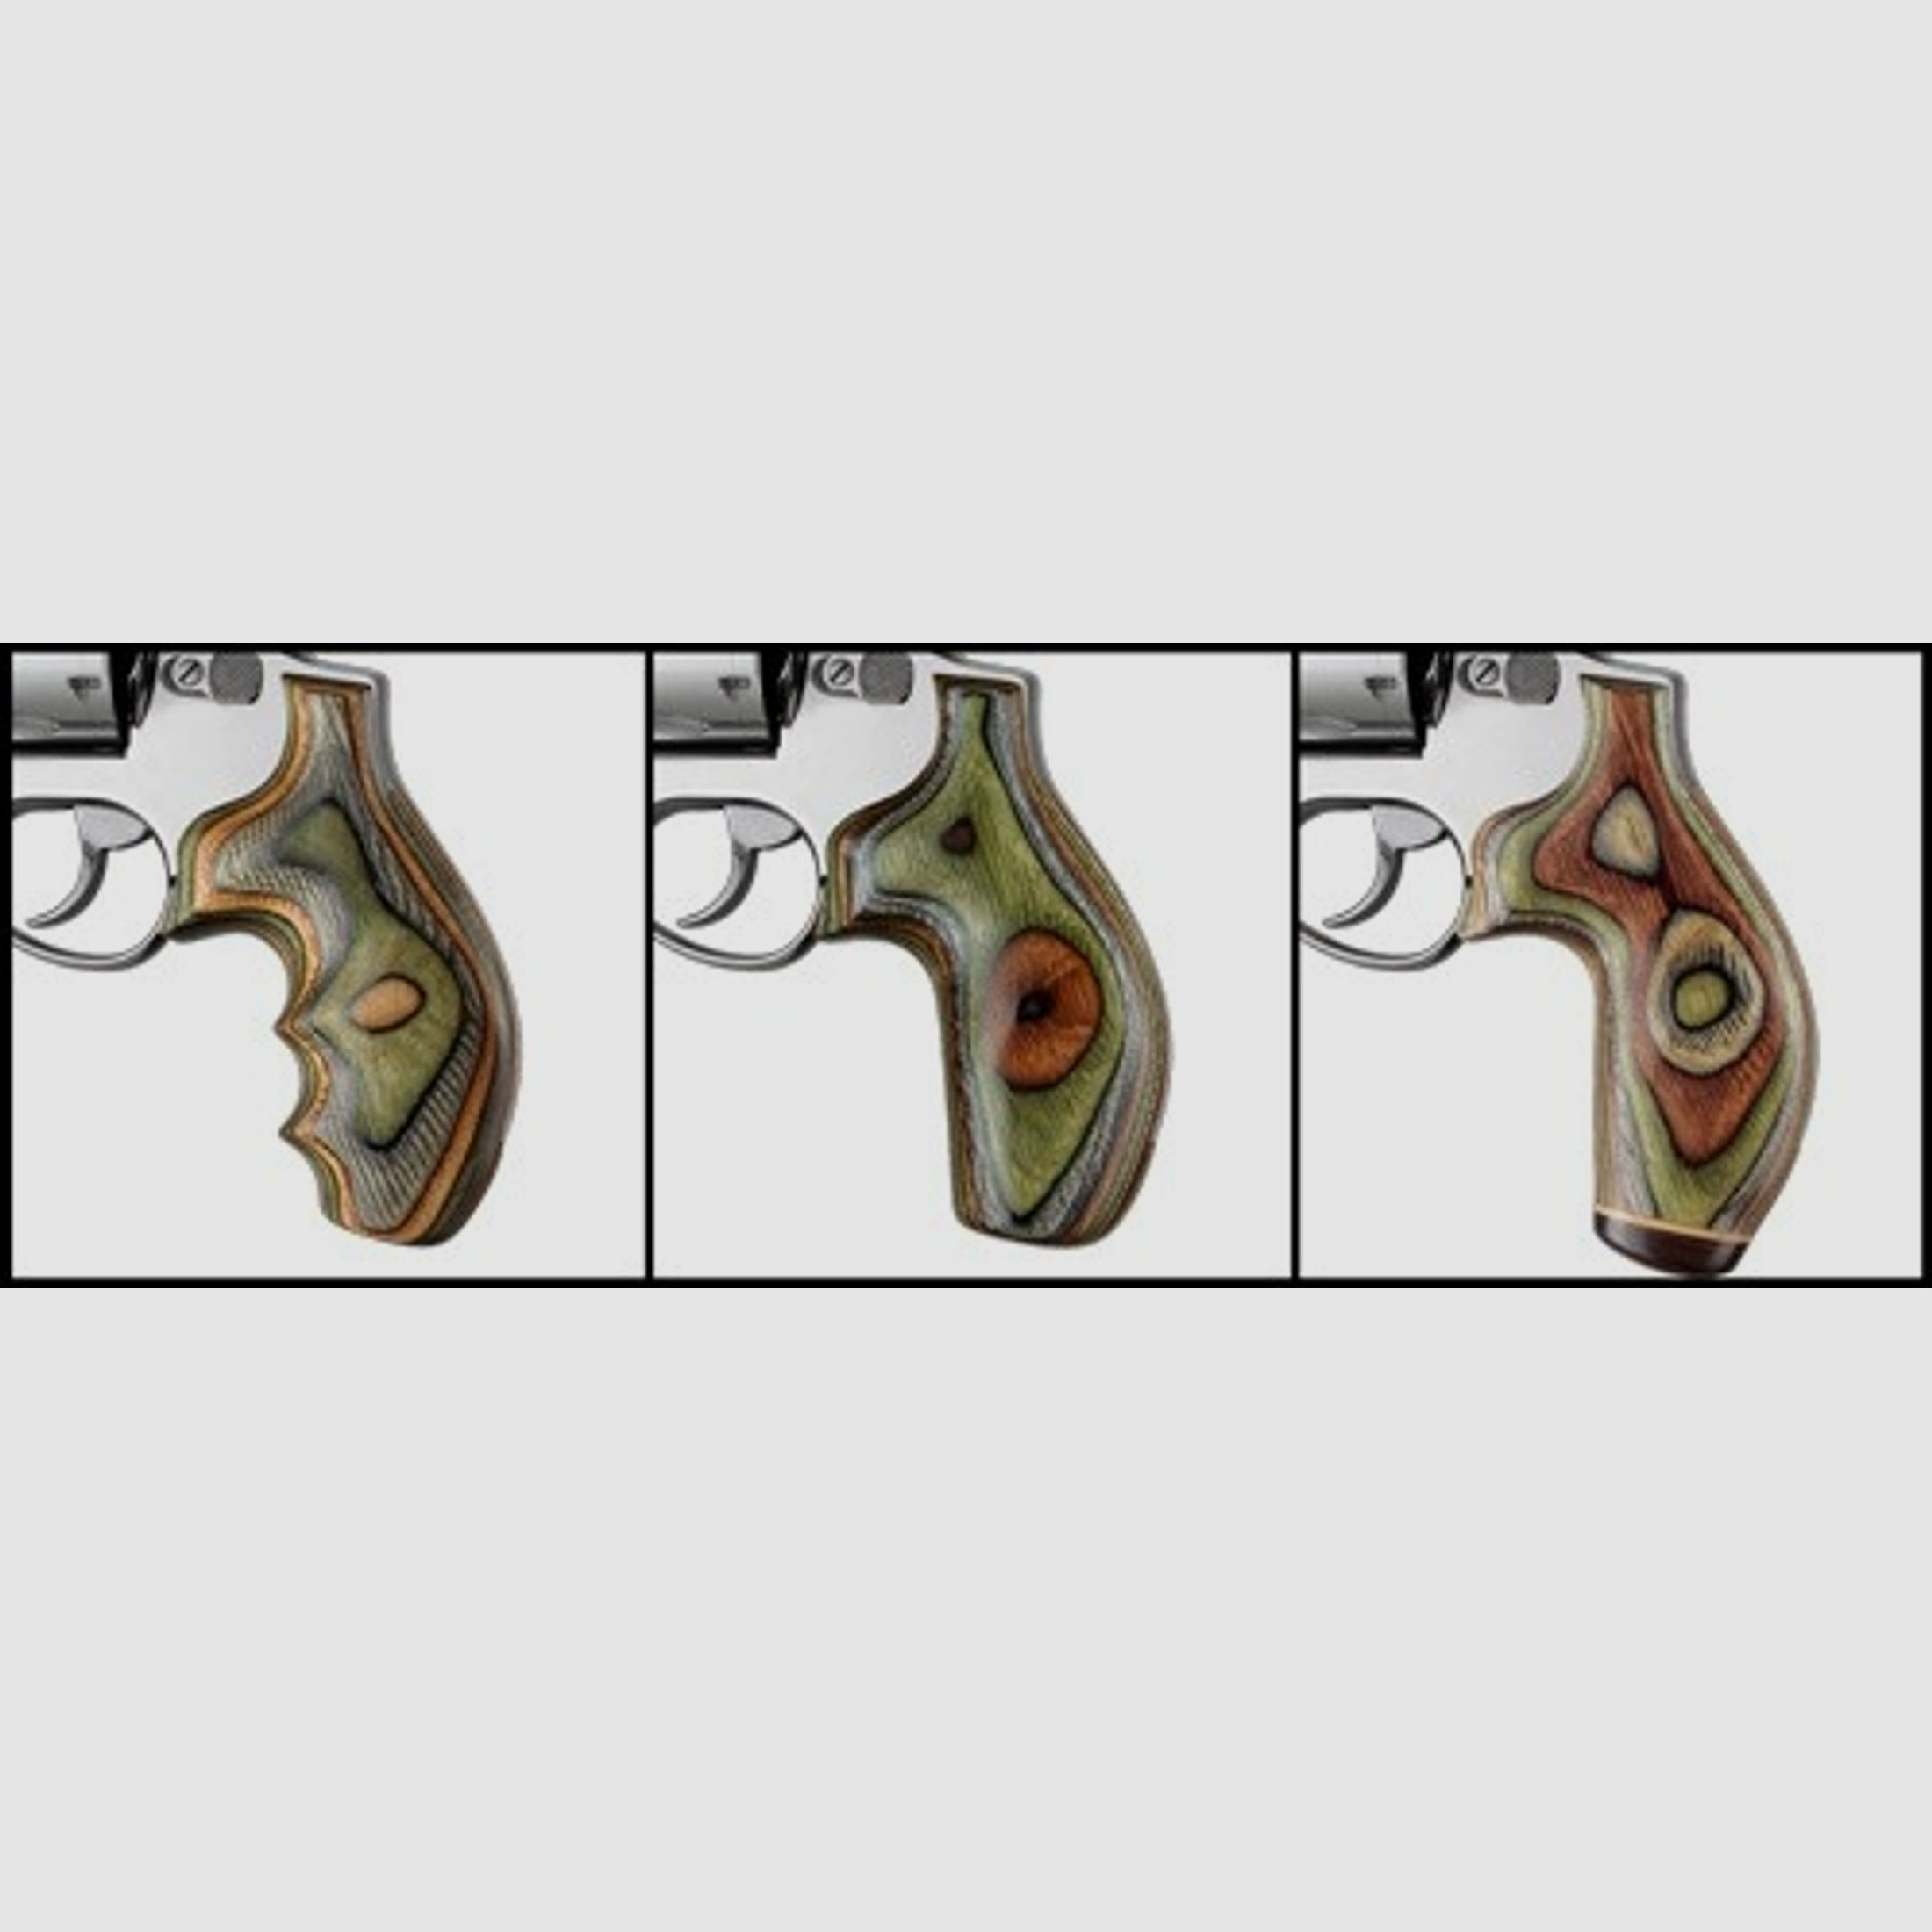 Revolver Griff für Ruger SP101 ohne Fingerrillen Lamo Camo Checkered